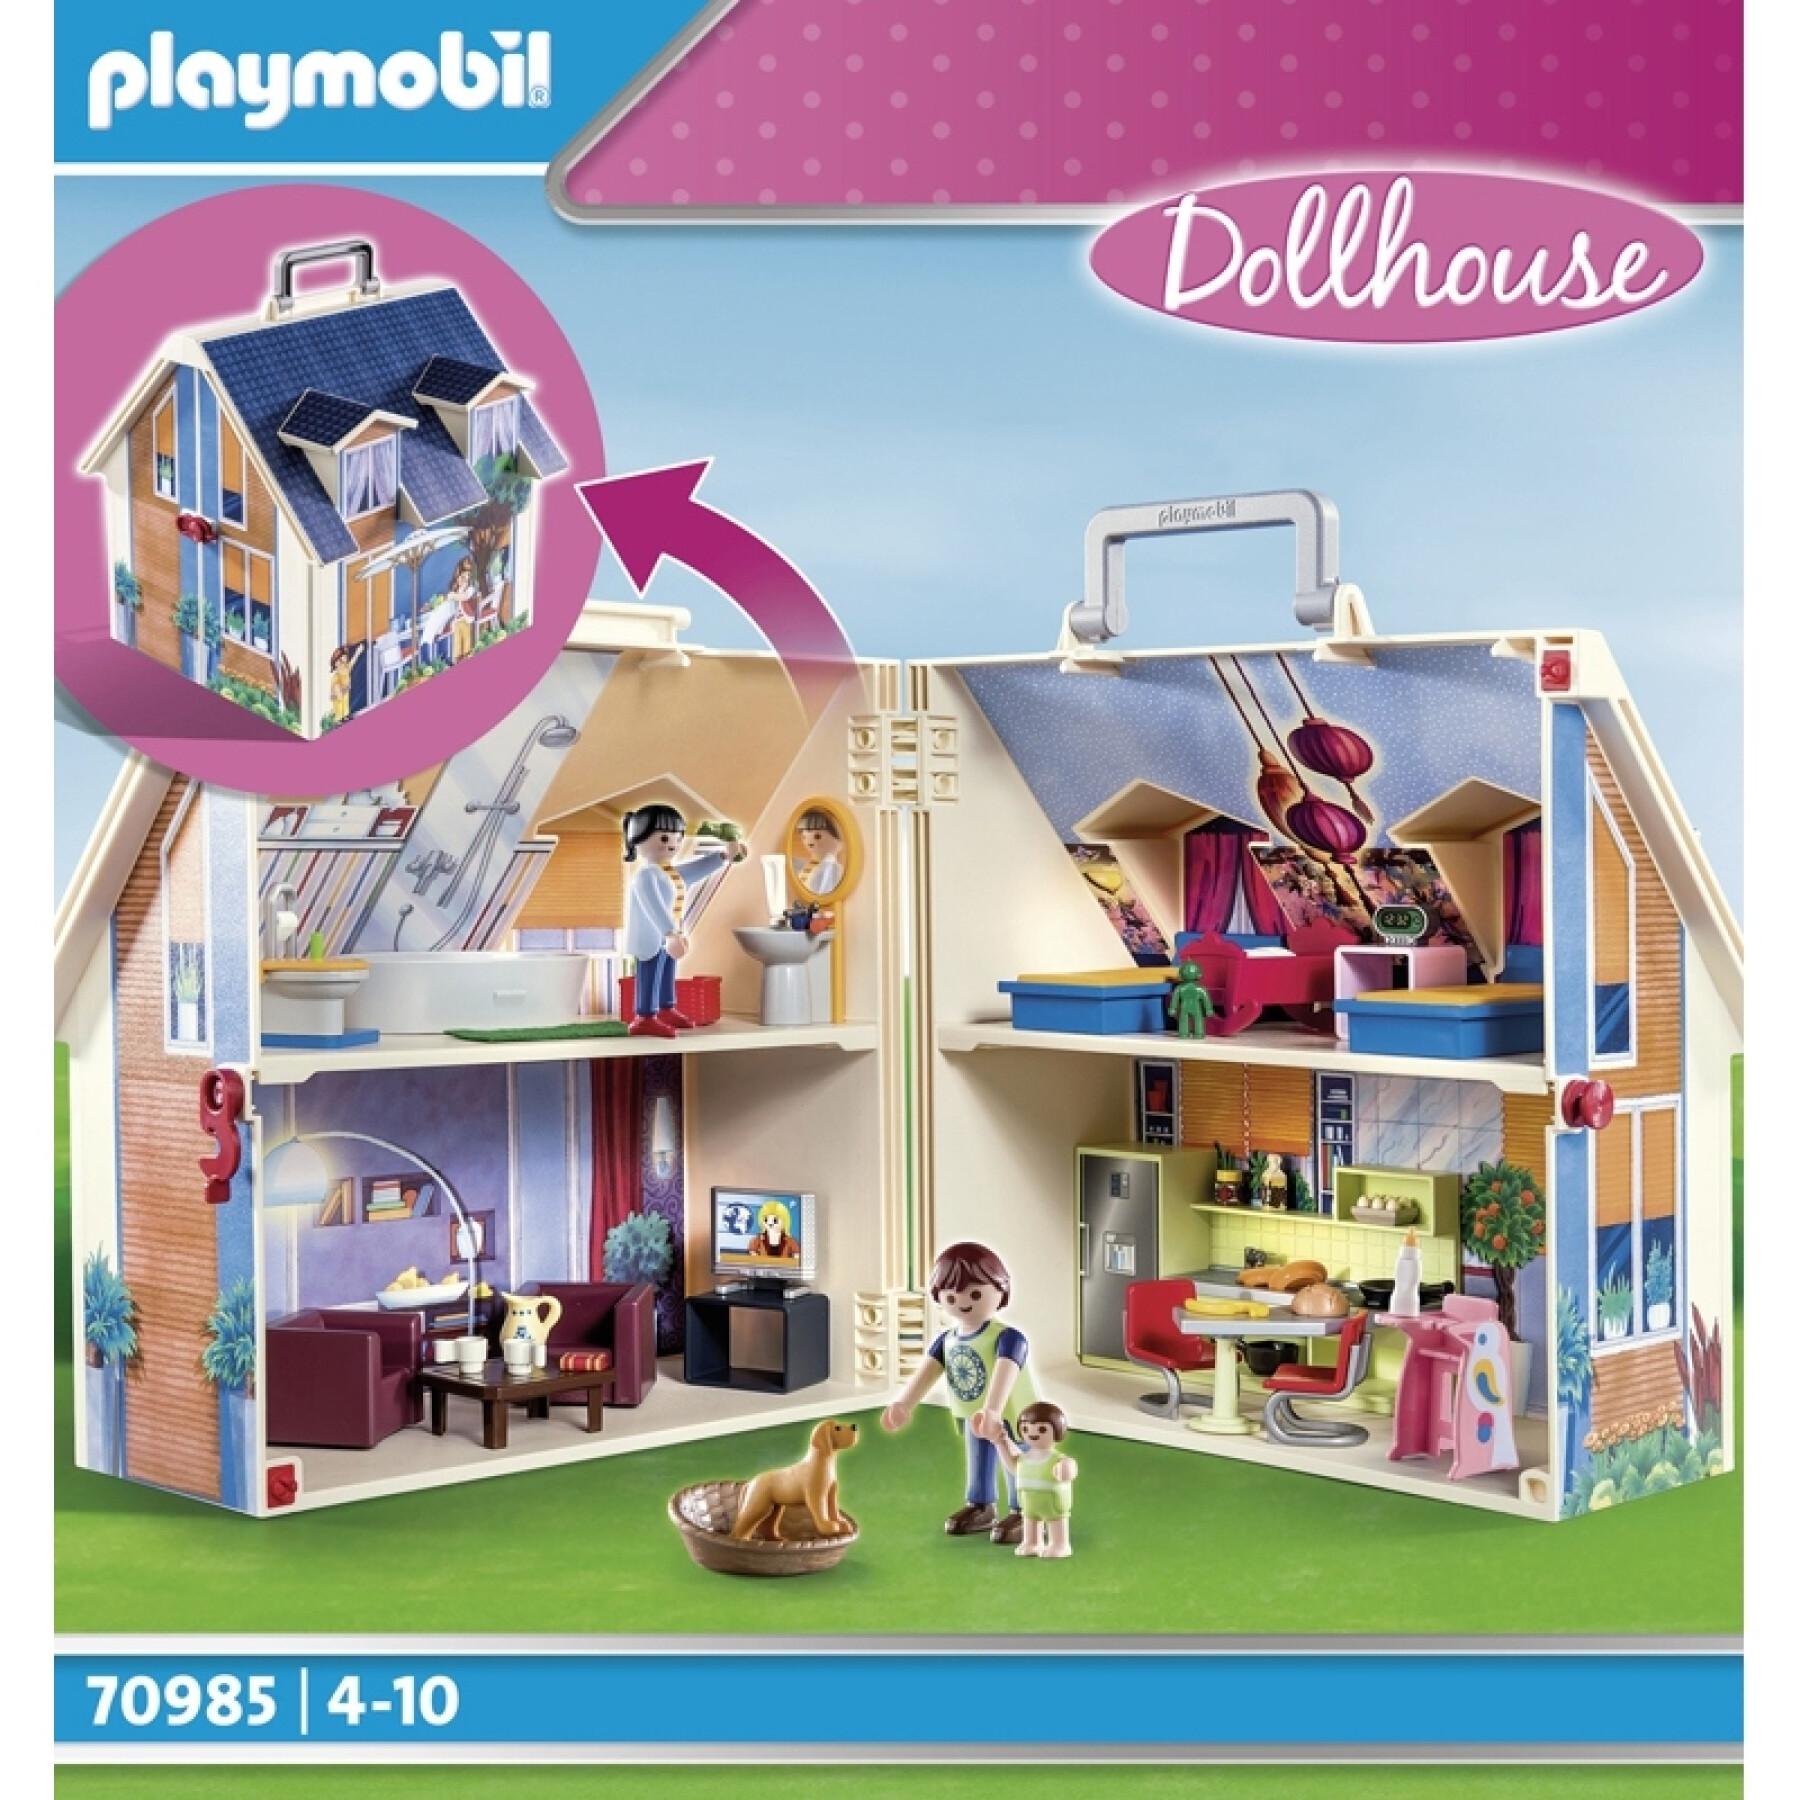 Portable home Playmobil